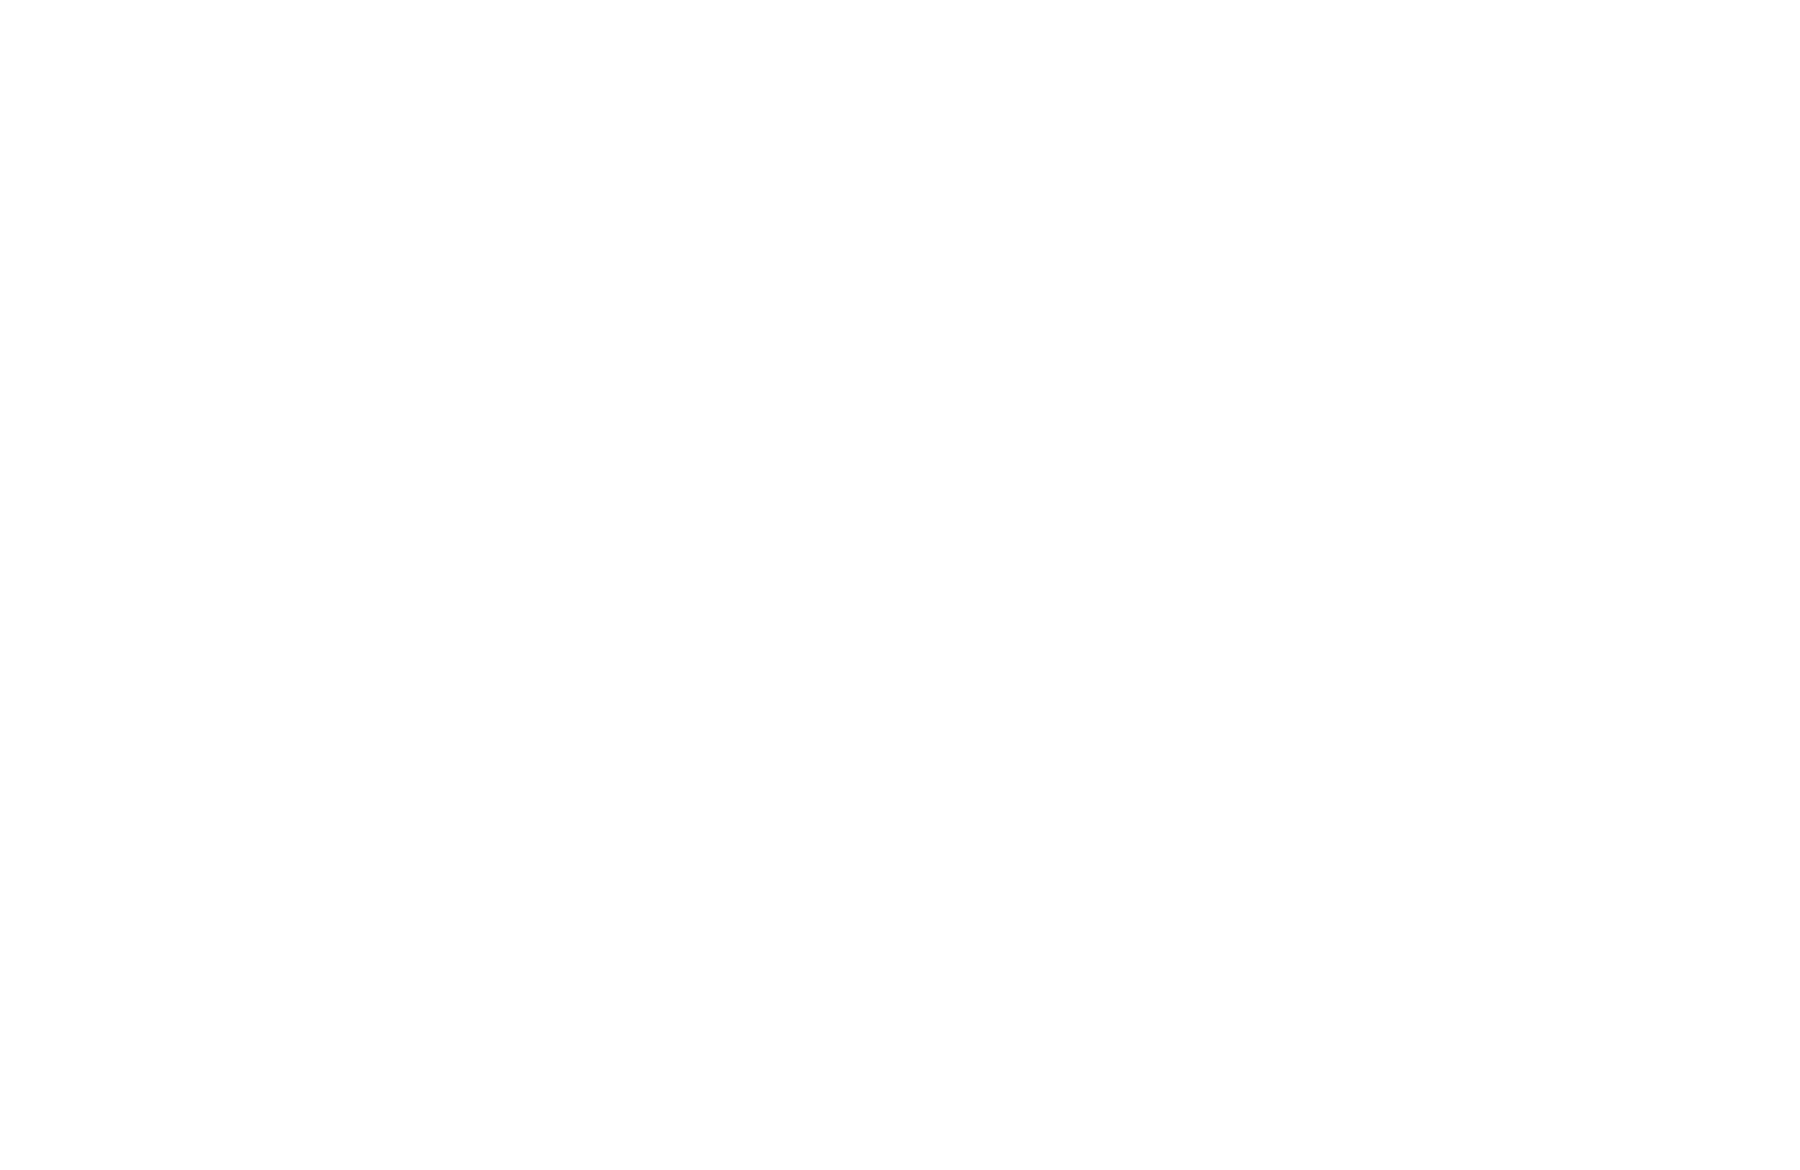 Accounting Grade 12 